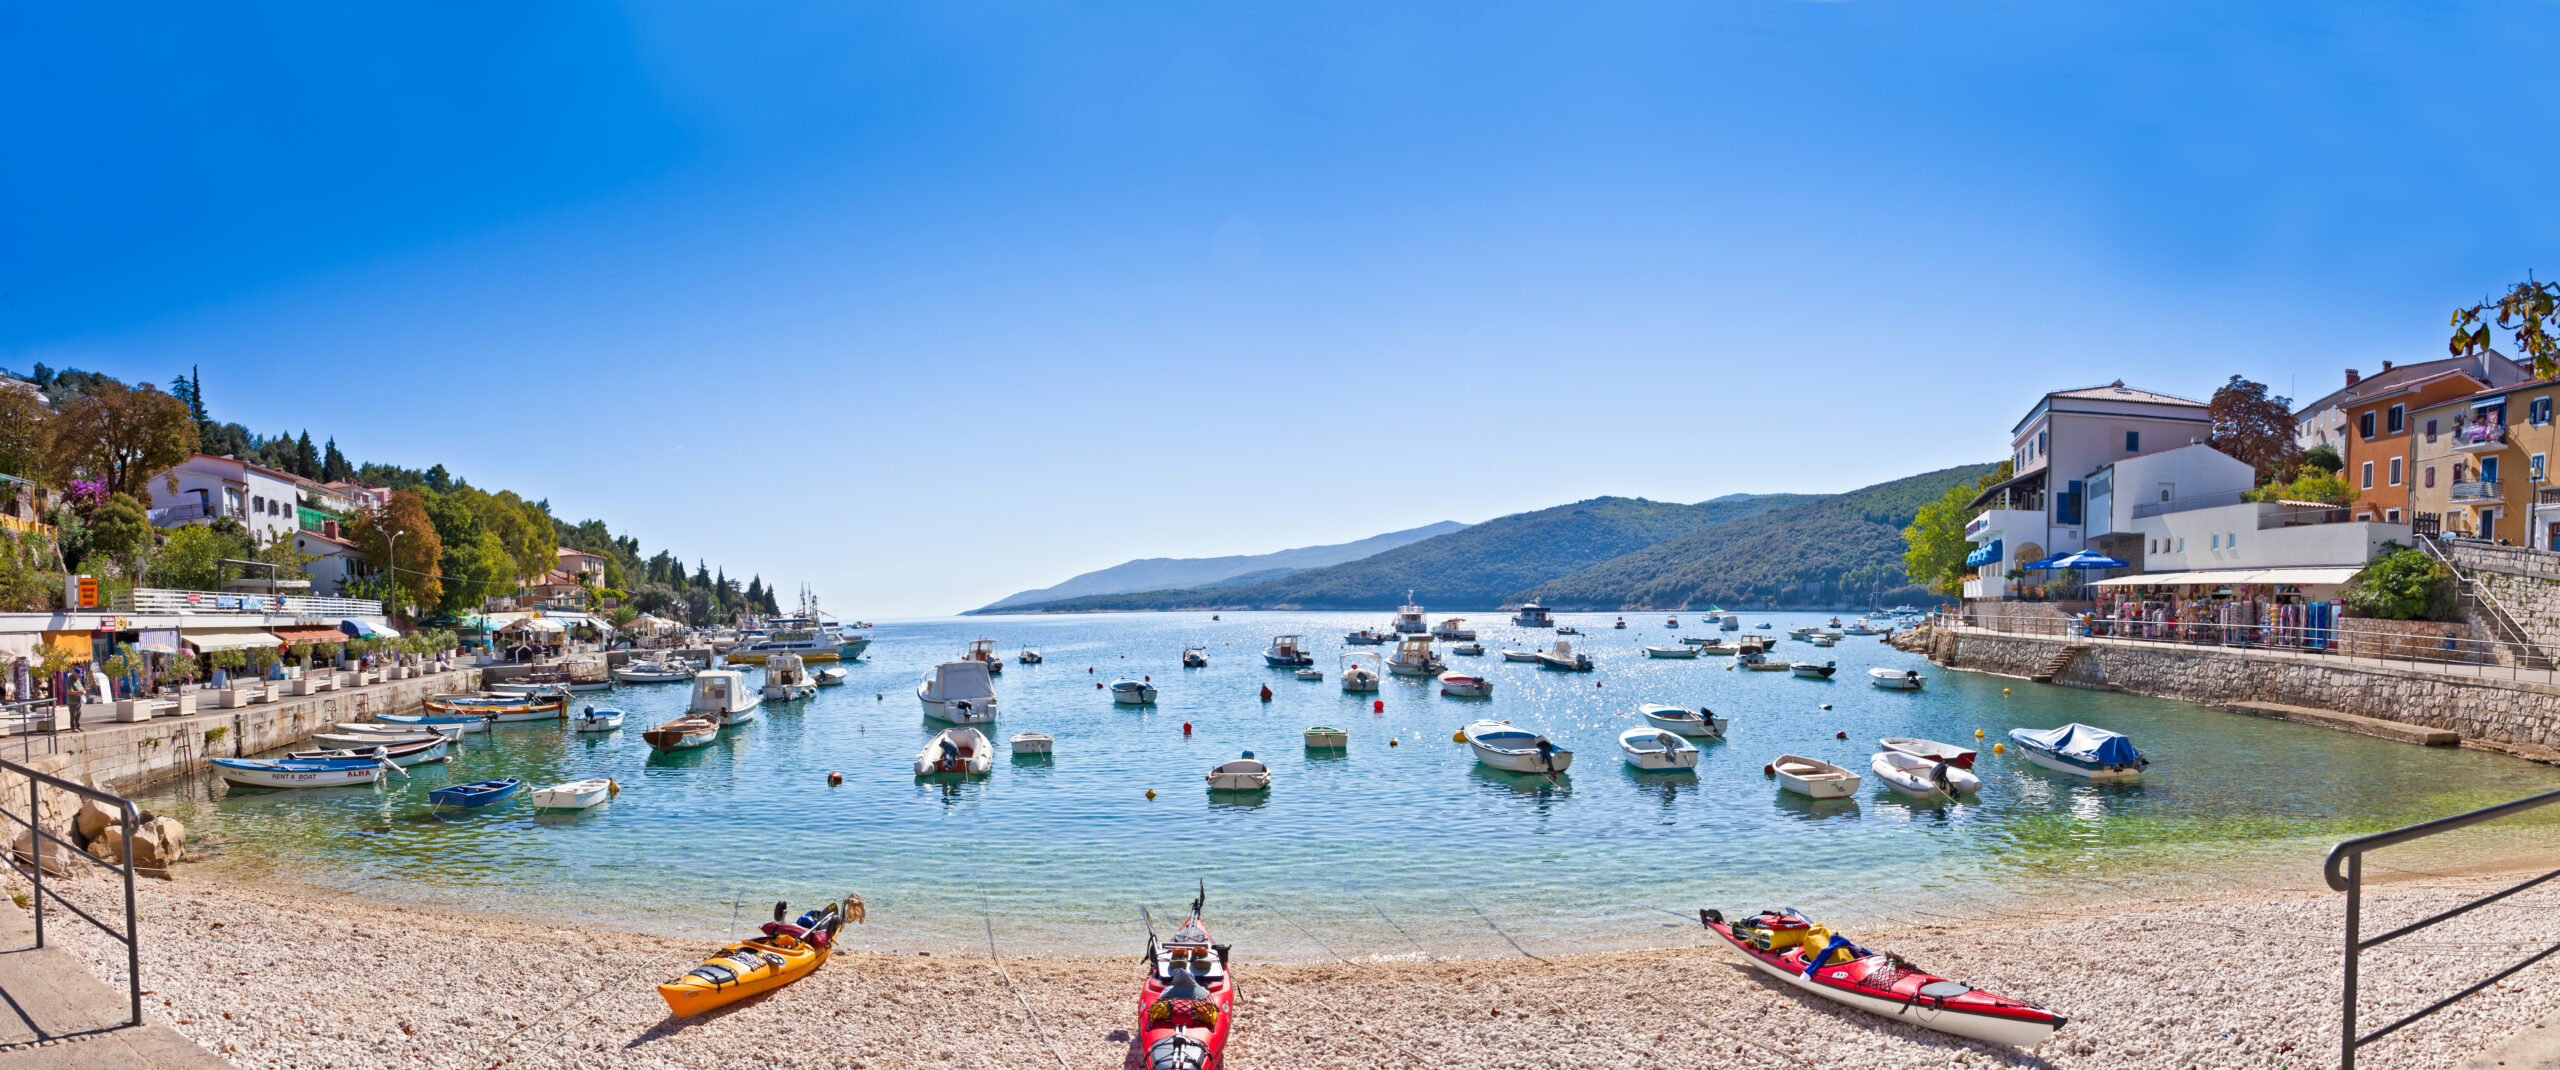 Entdecken Sie die Schönheit Istriens: Ein perfektes Reiseziel für Ihren Urlaub.